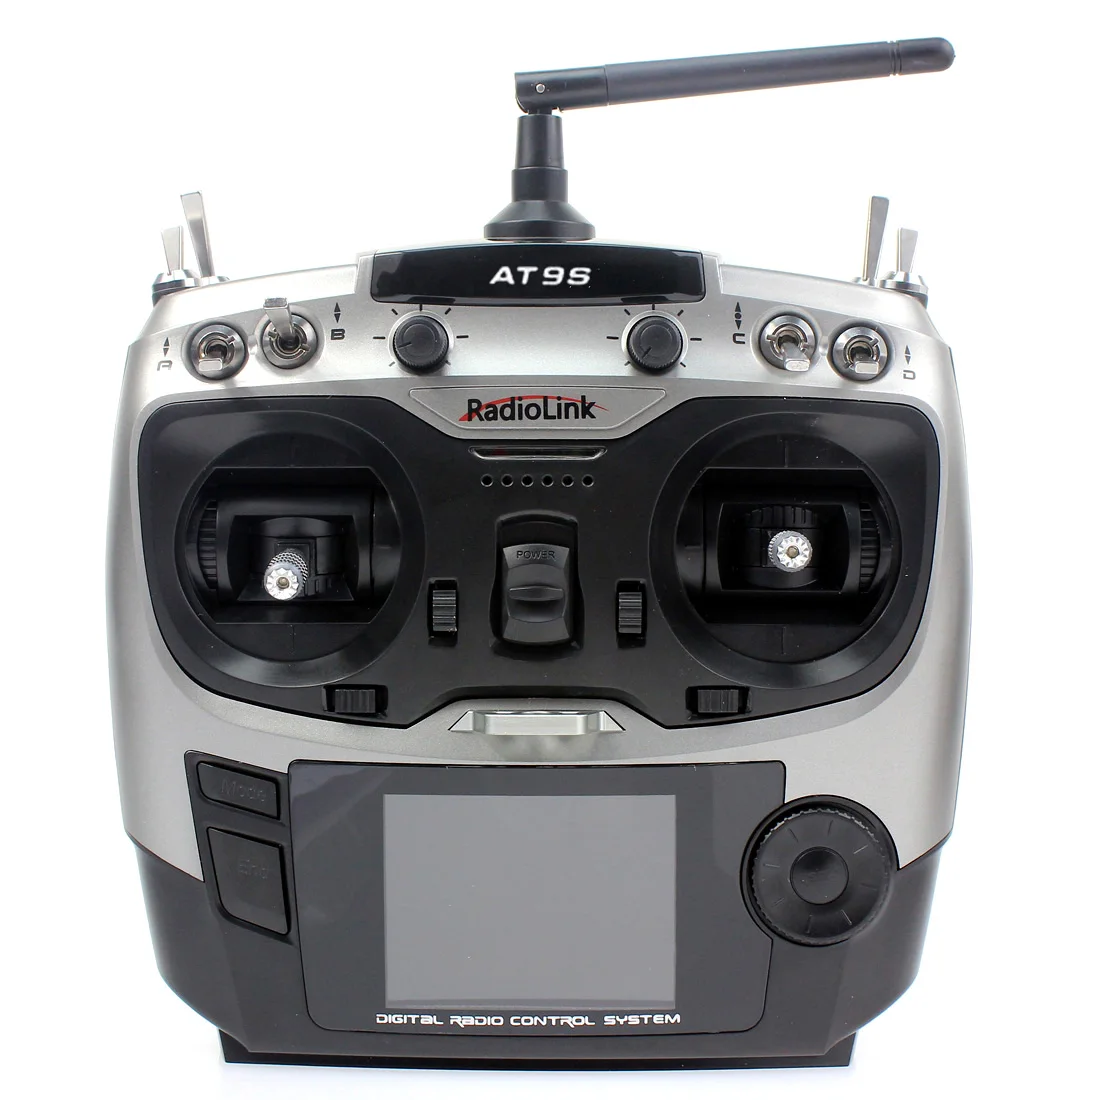 F08618-T DIY FPV Drone, At9s RadioLink 3 DigiTaL RADIO CONTROL SYSTEM